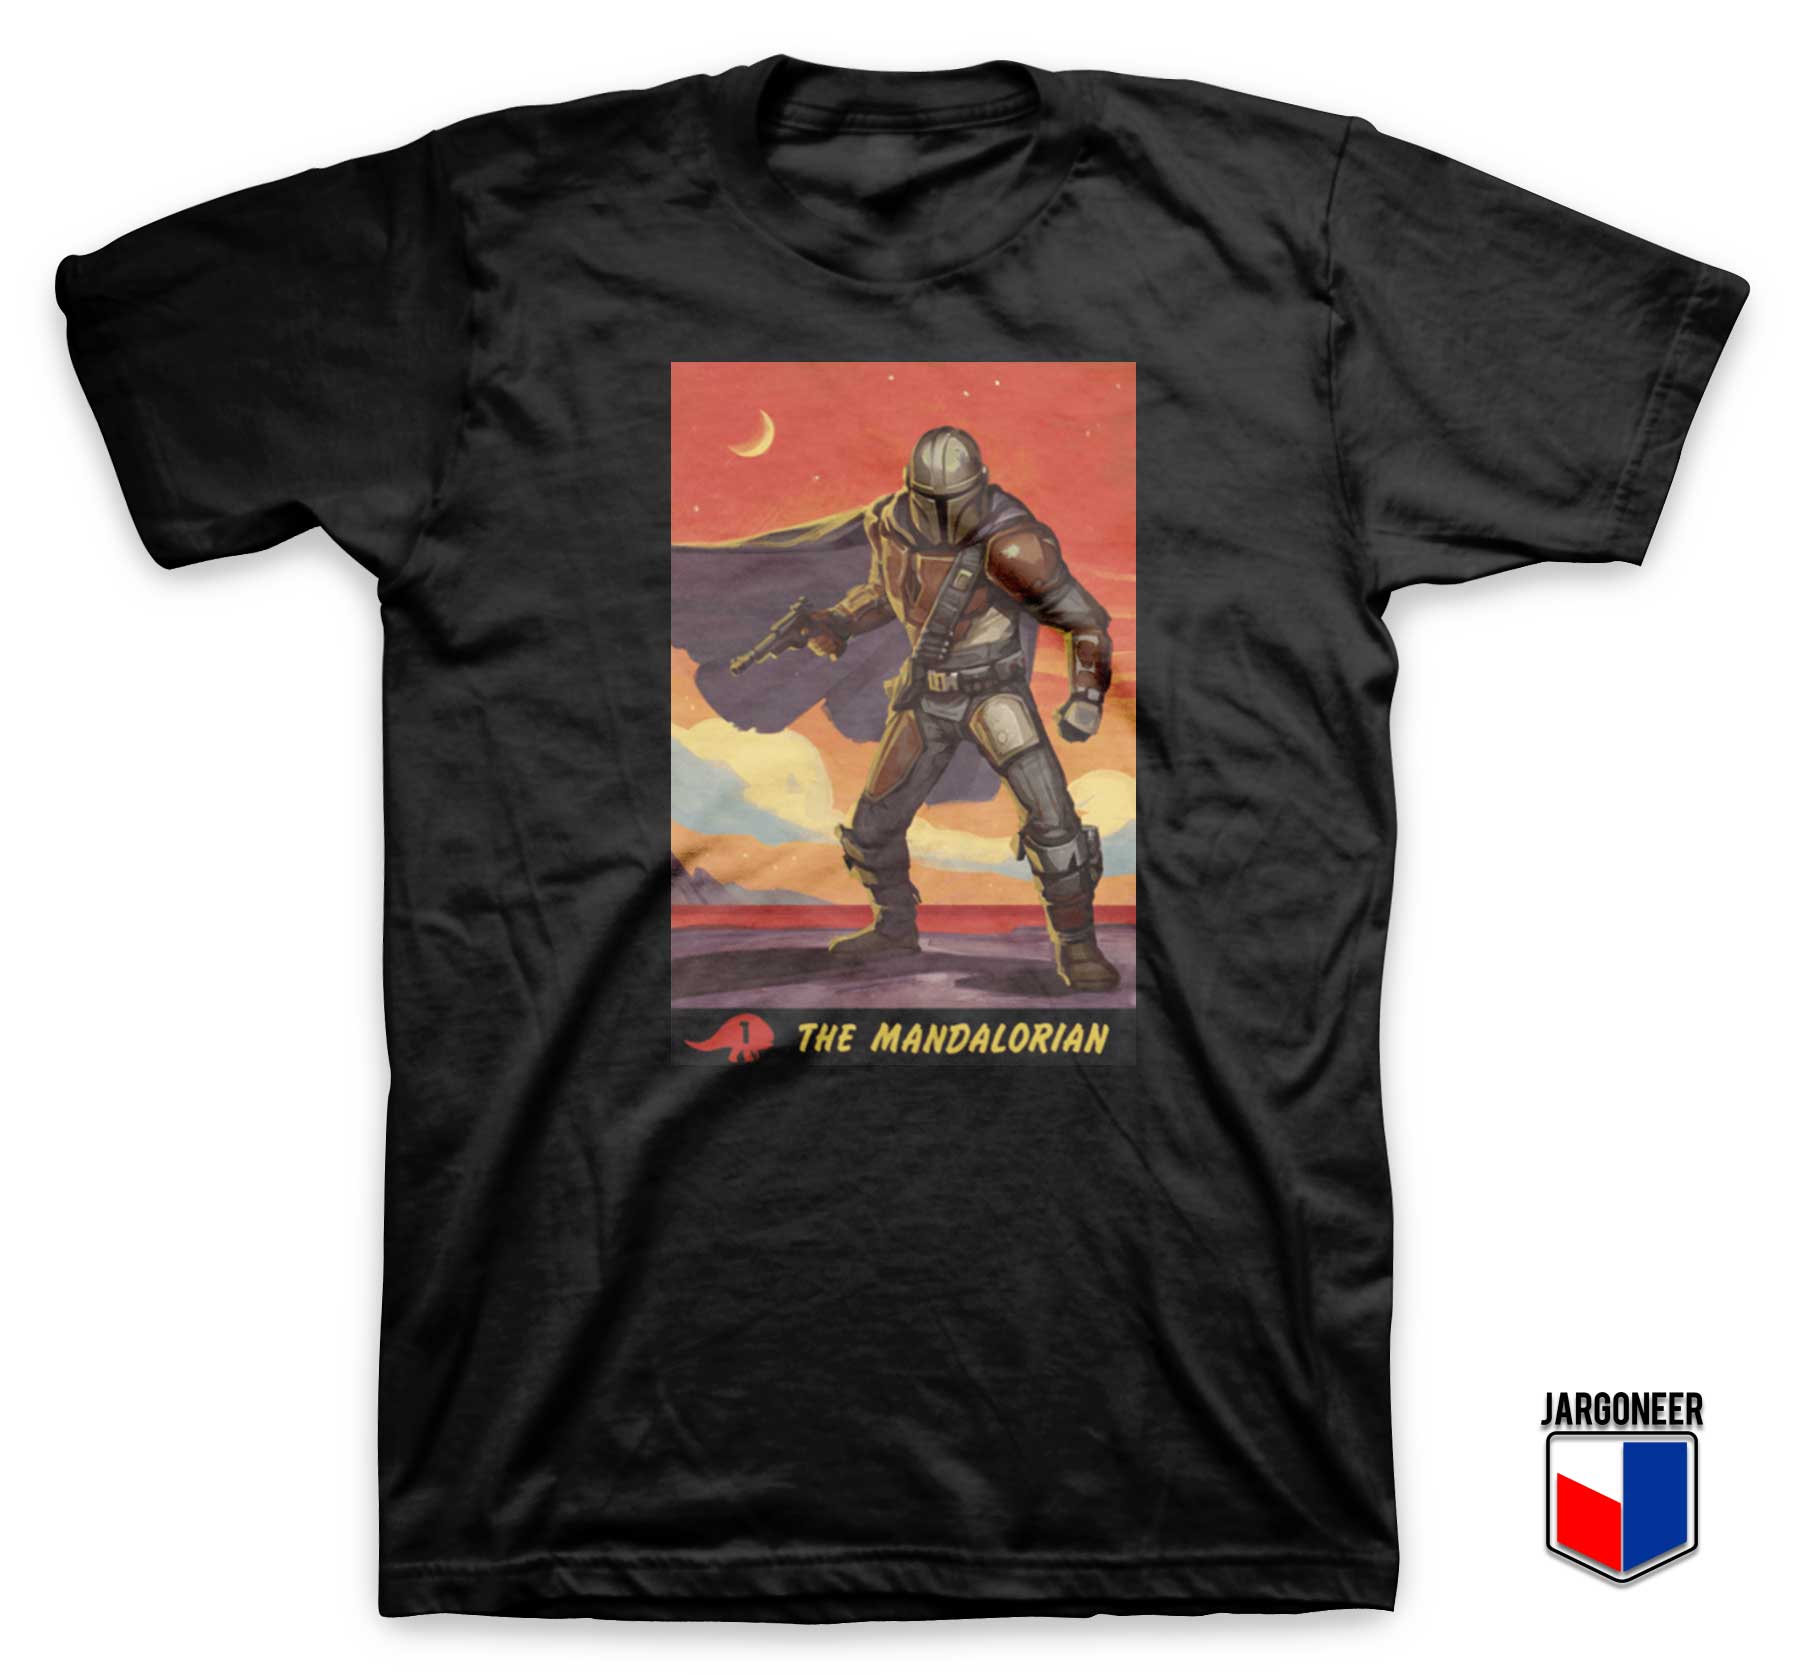 The Mandalorian Poster T Shirt - Shop Unique Graphic Cool Shirt Designs